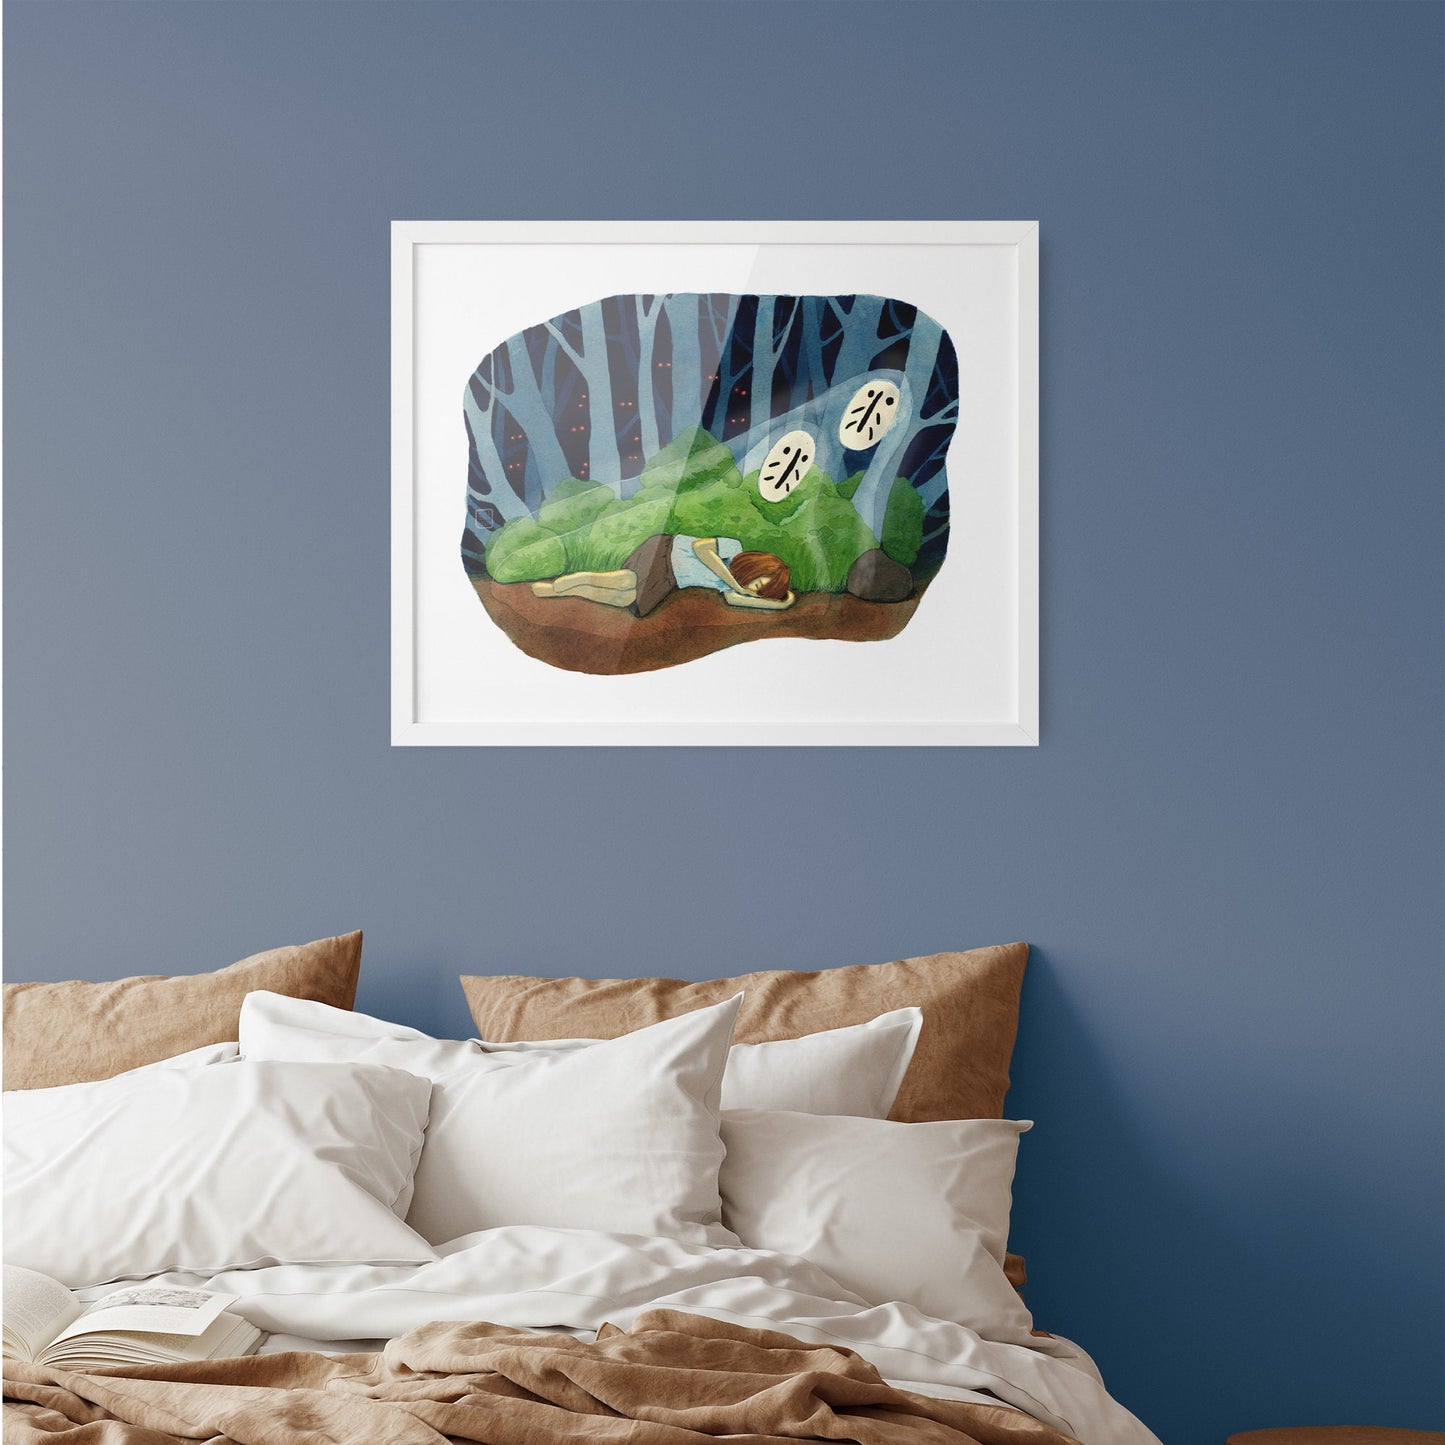 Kunstdruck 'Schlafbewacher' - 37x29cm - auf feinem Aquarellpapier-  handsigniert und limitiert